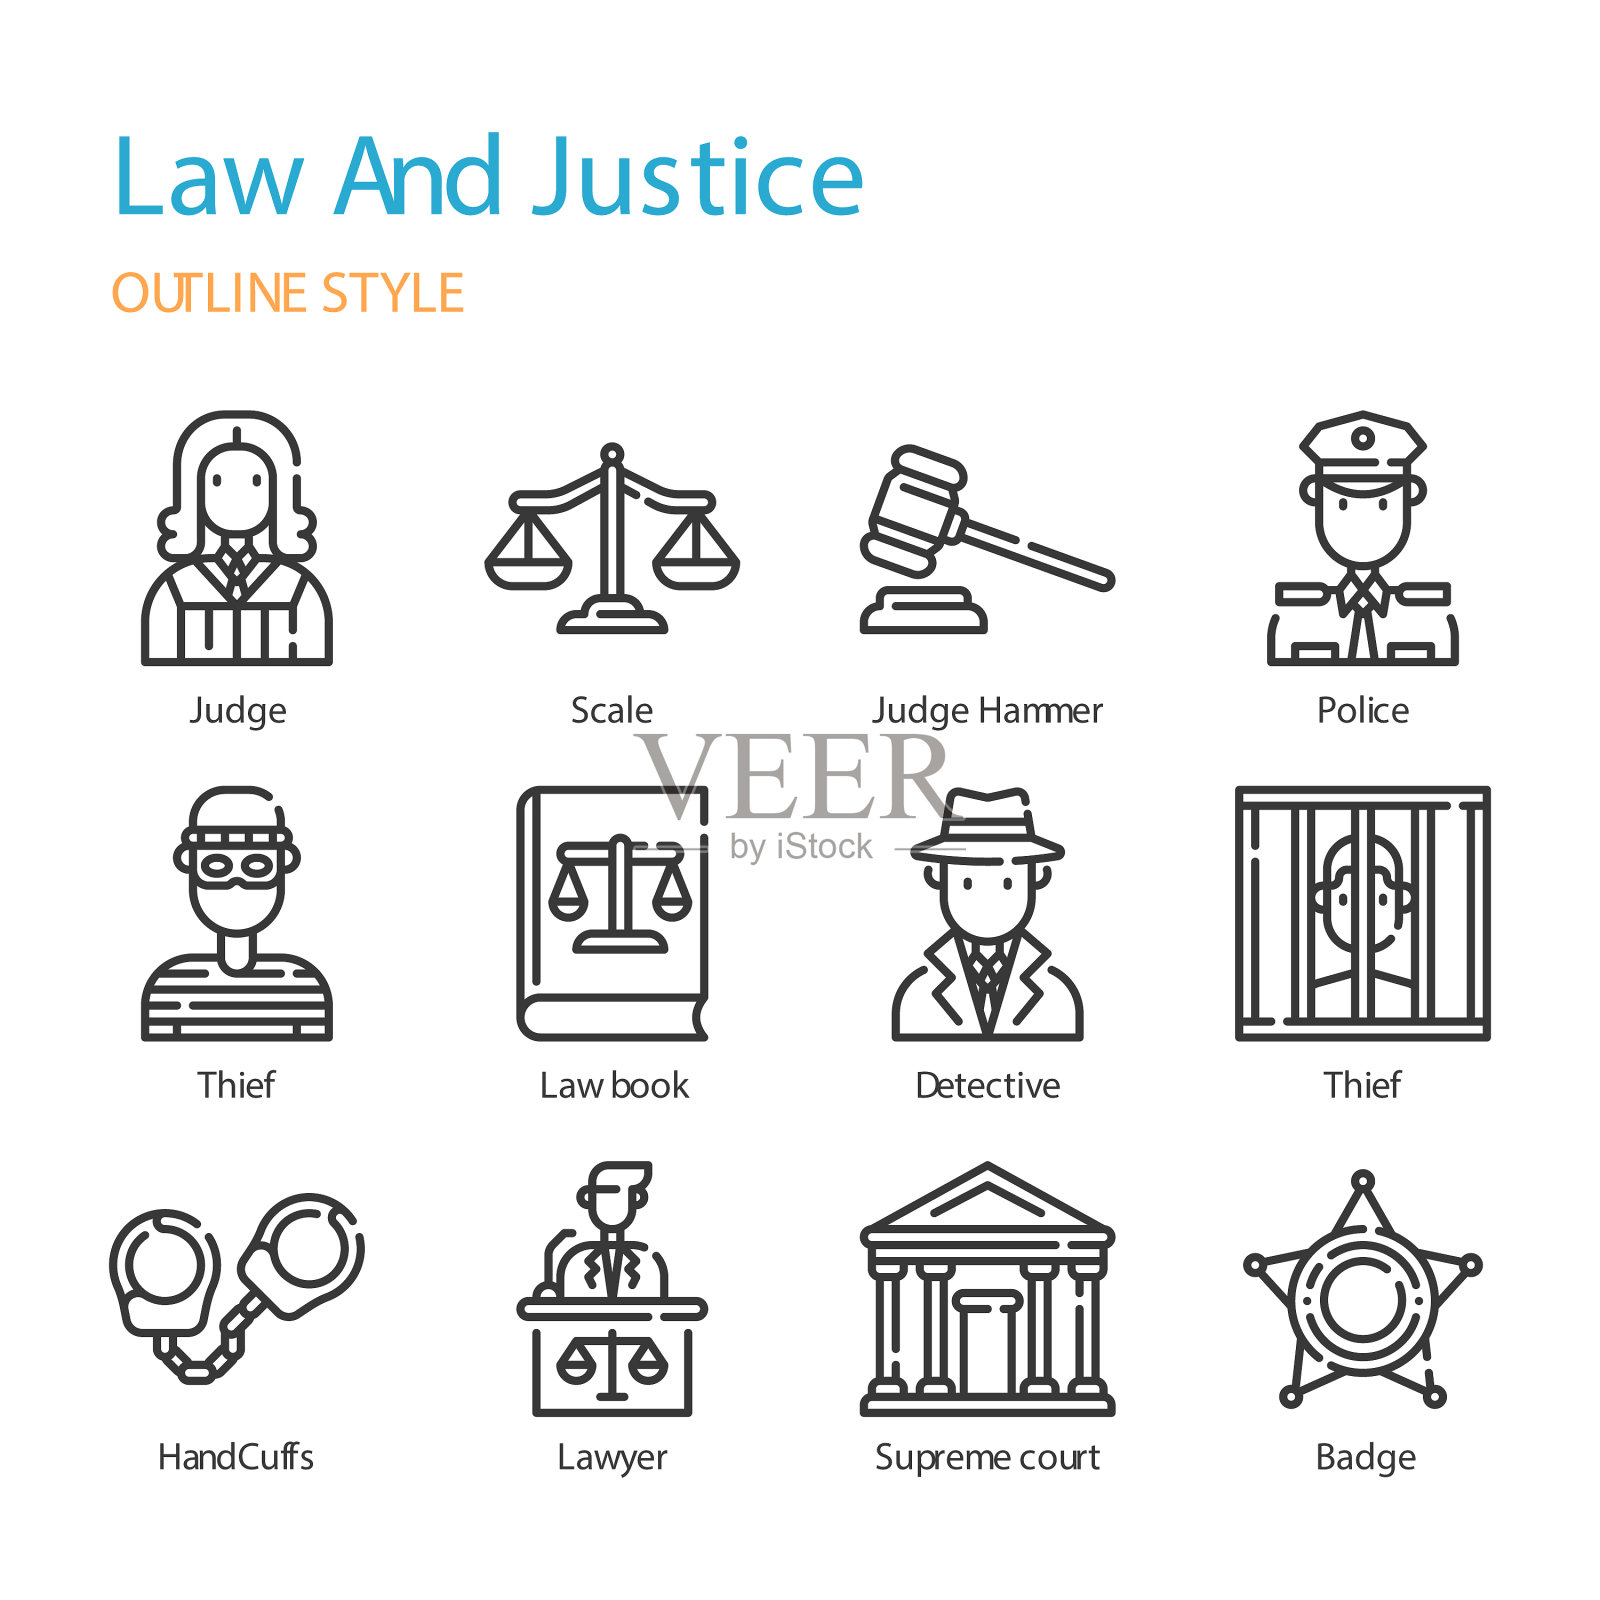 法律和正义的轮廓图标和符号集插画图片素材